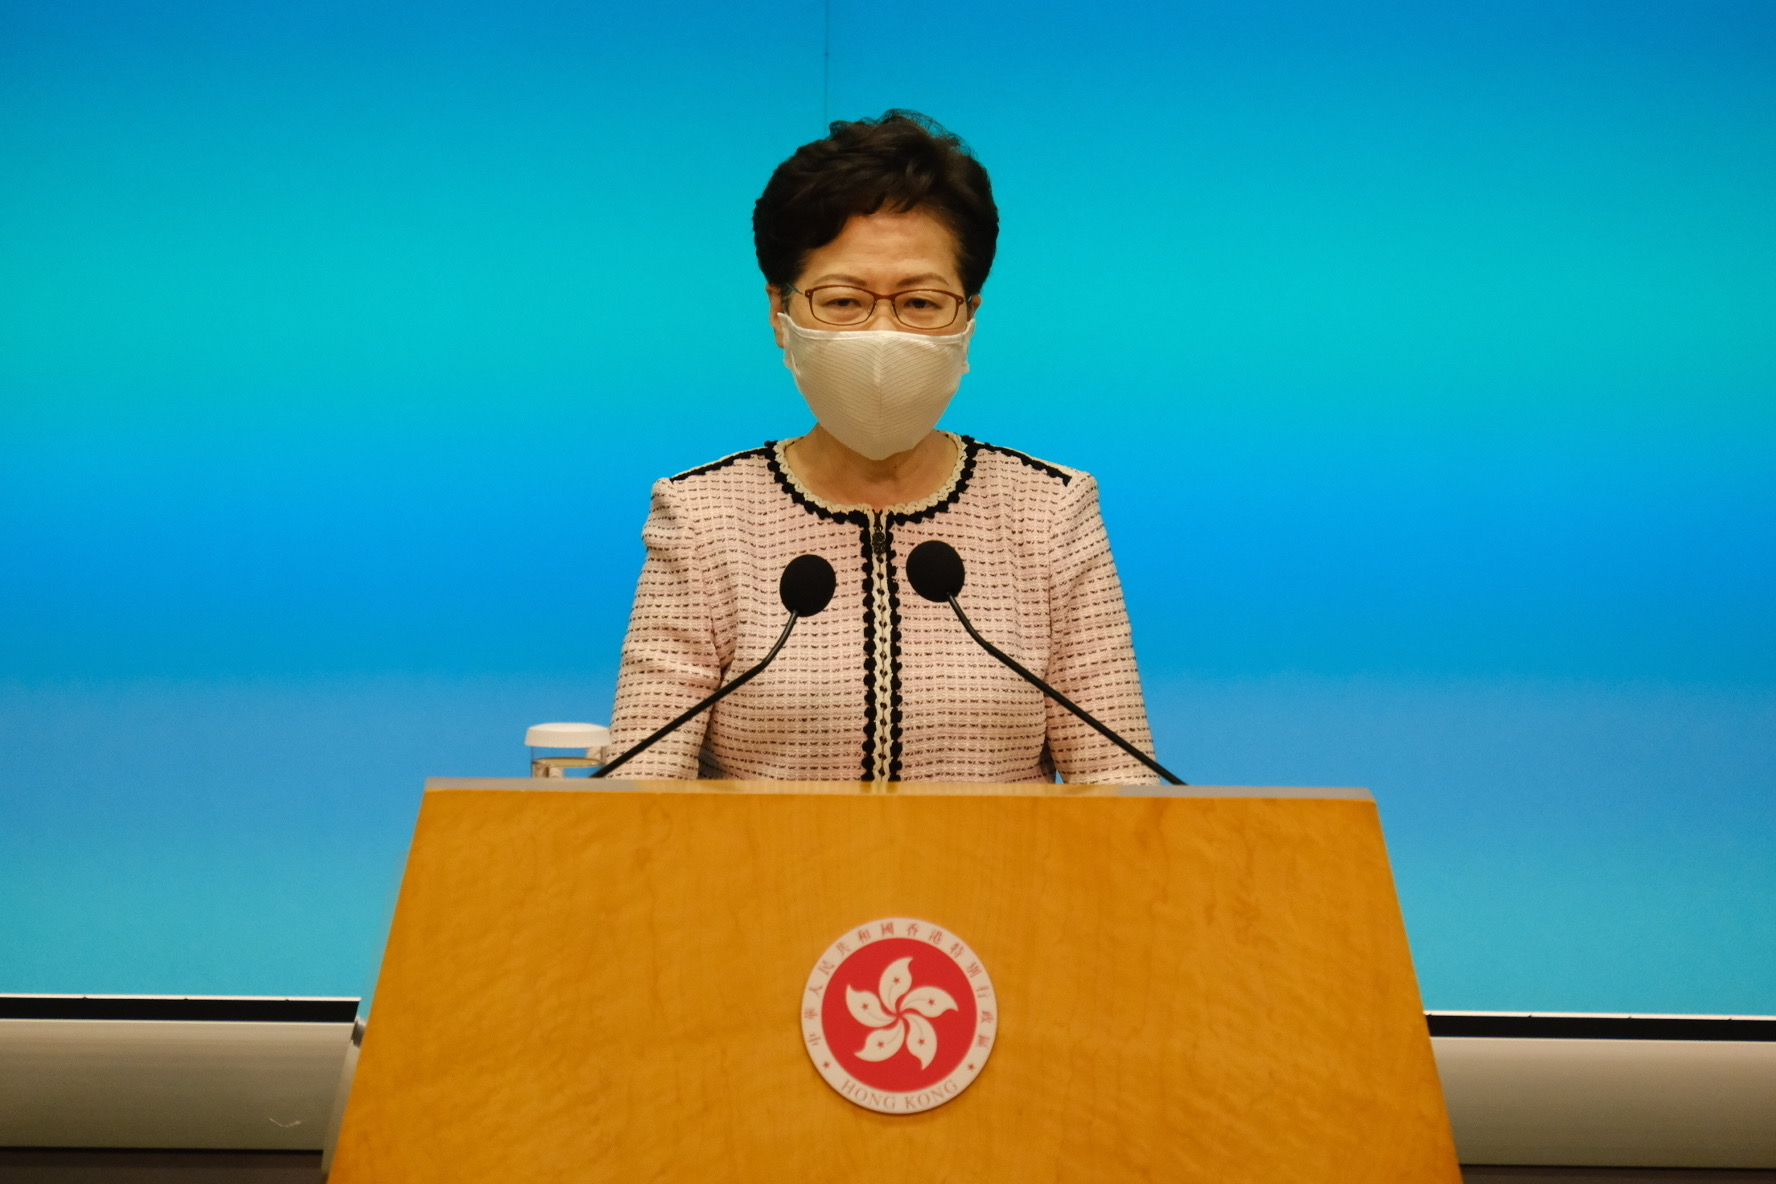 林鄭月娥表示全國人大常委會制定香港國安法過程中聽取了多方面意見。 (新華社資料圖片)